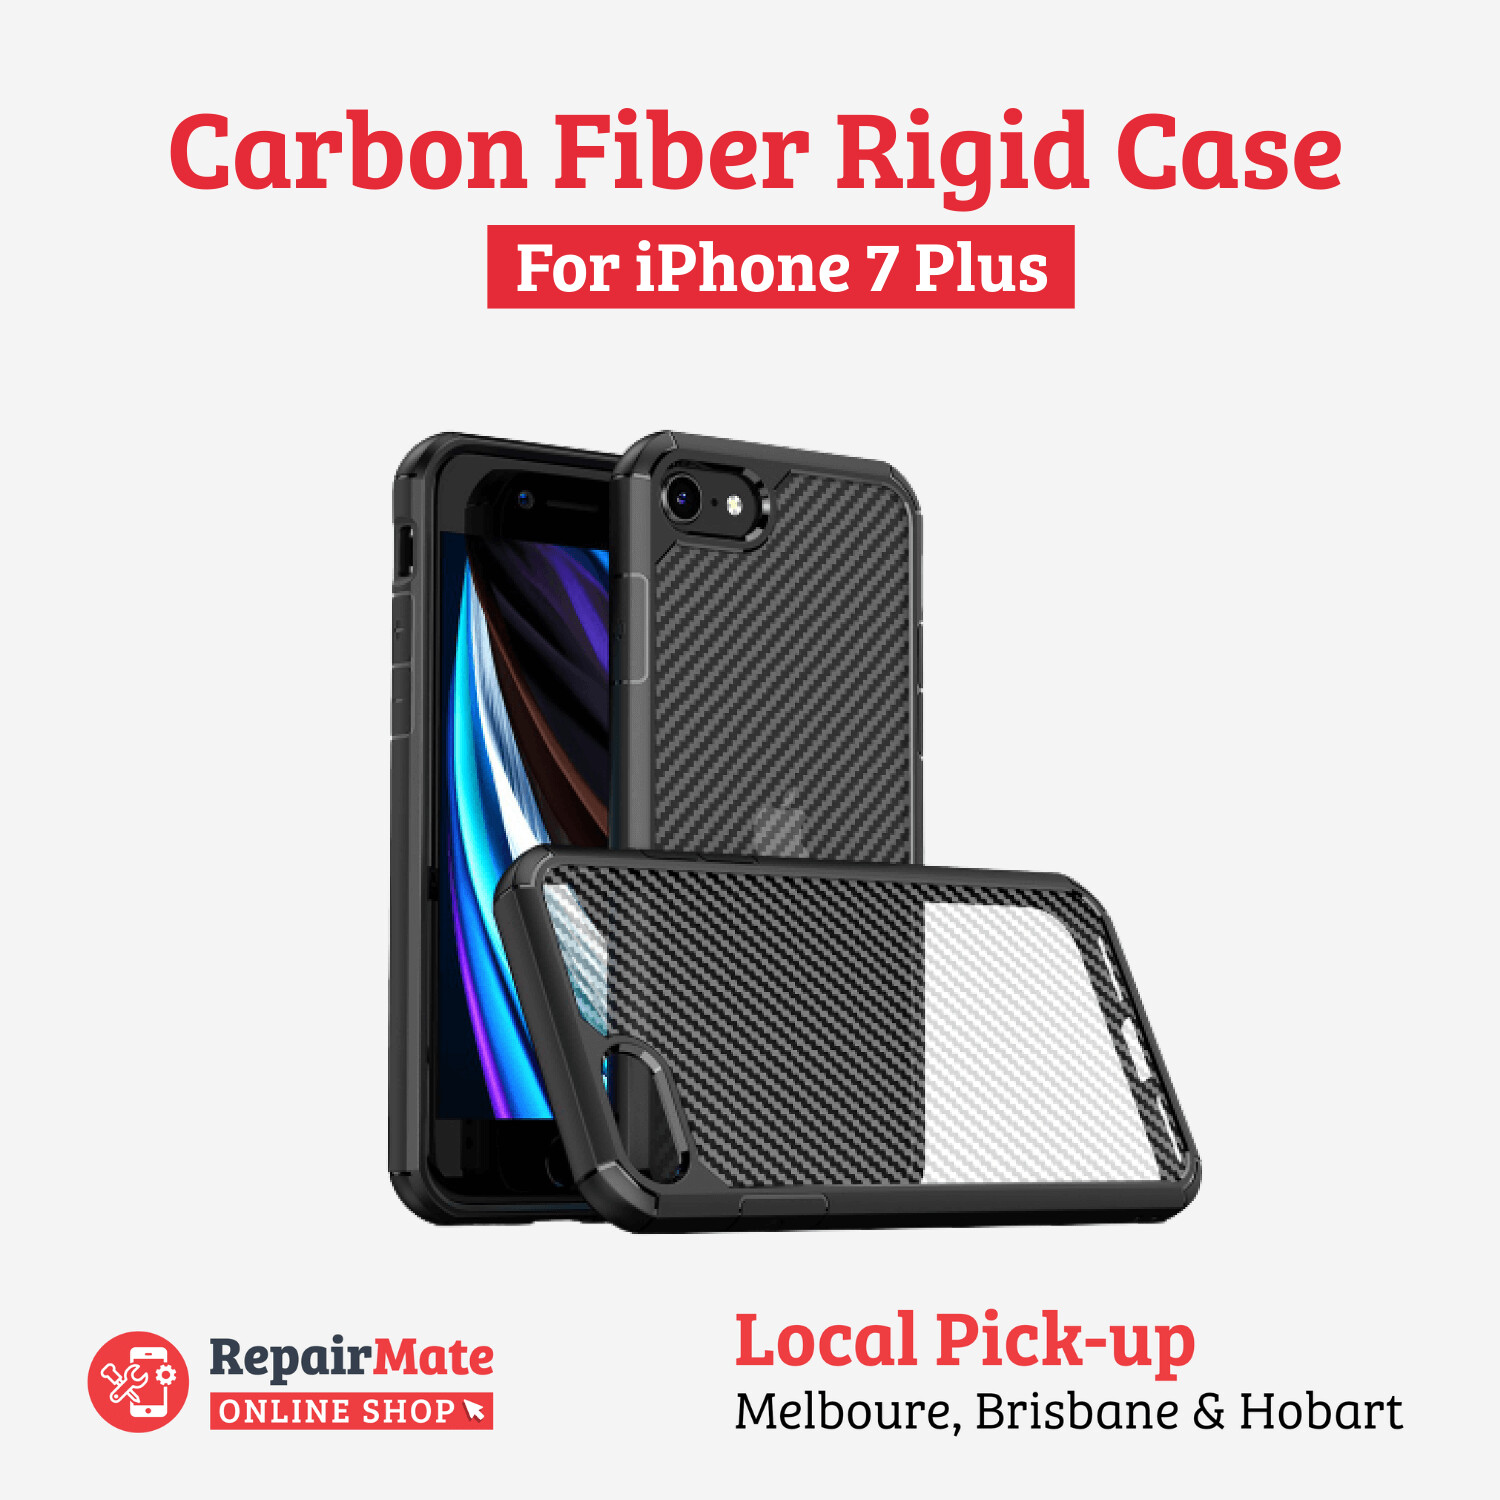 iPhone 7 Plus Carbon Fiber Rigid Case Cover